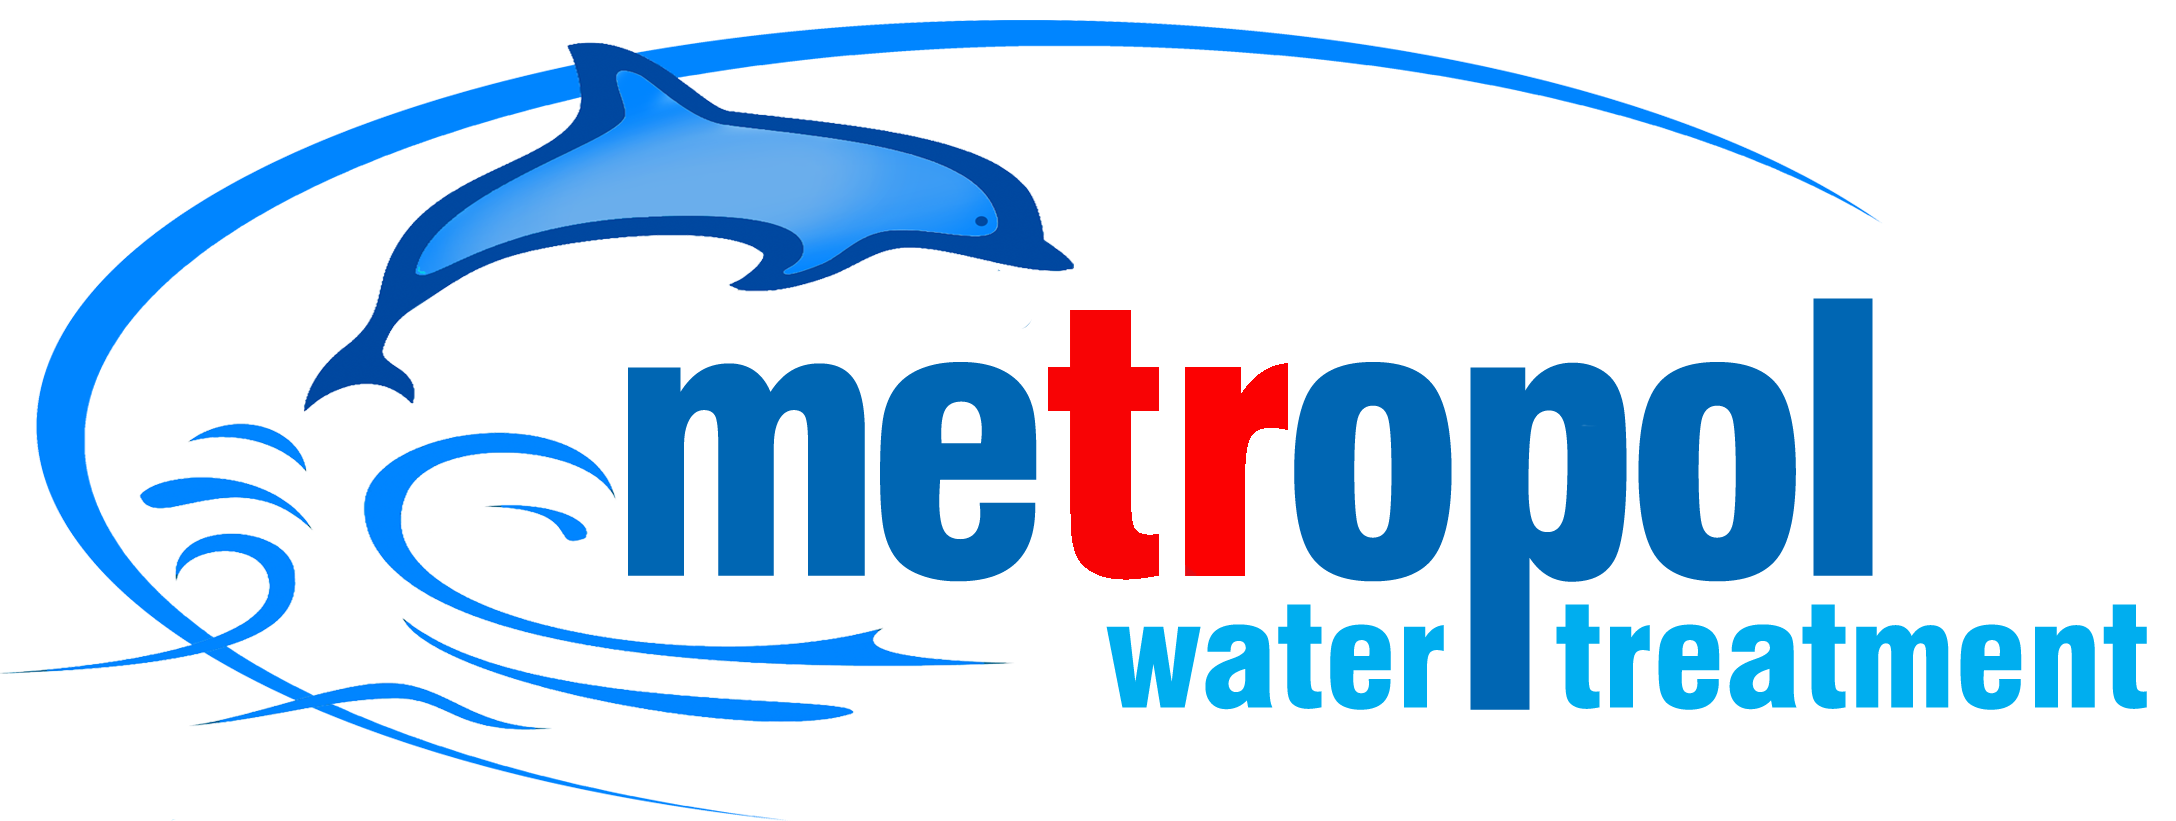 5 Aşamalı Pompasız Su Arıtma Cihazı - Metropol Su Arıtma Cİhazları- Ev Tipi- Toptan ve Perakende Su Arıtma Cİhazları